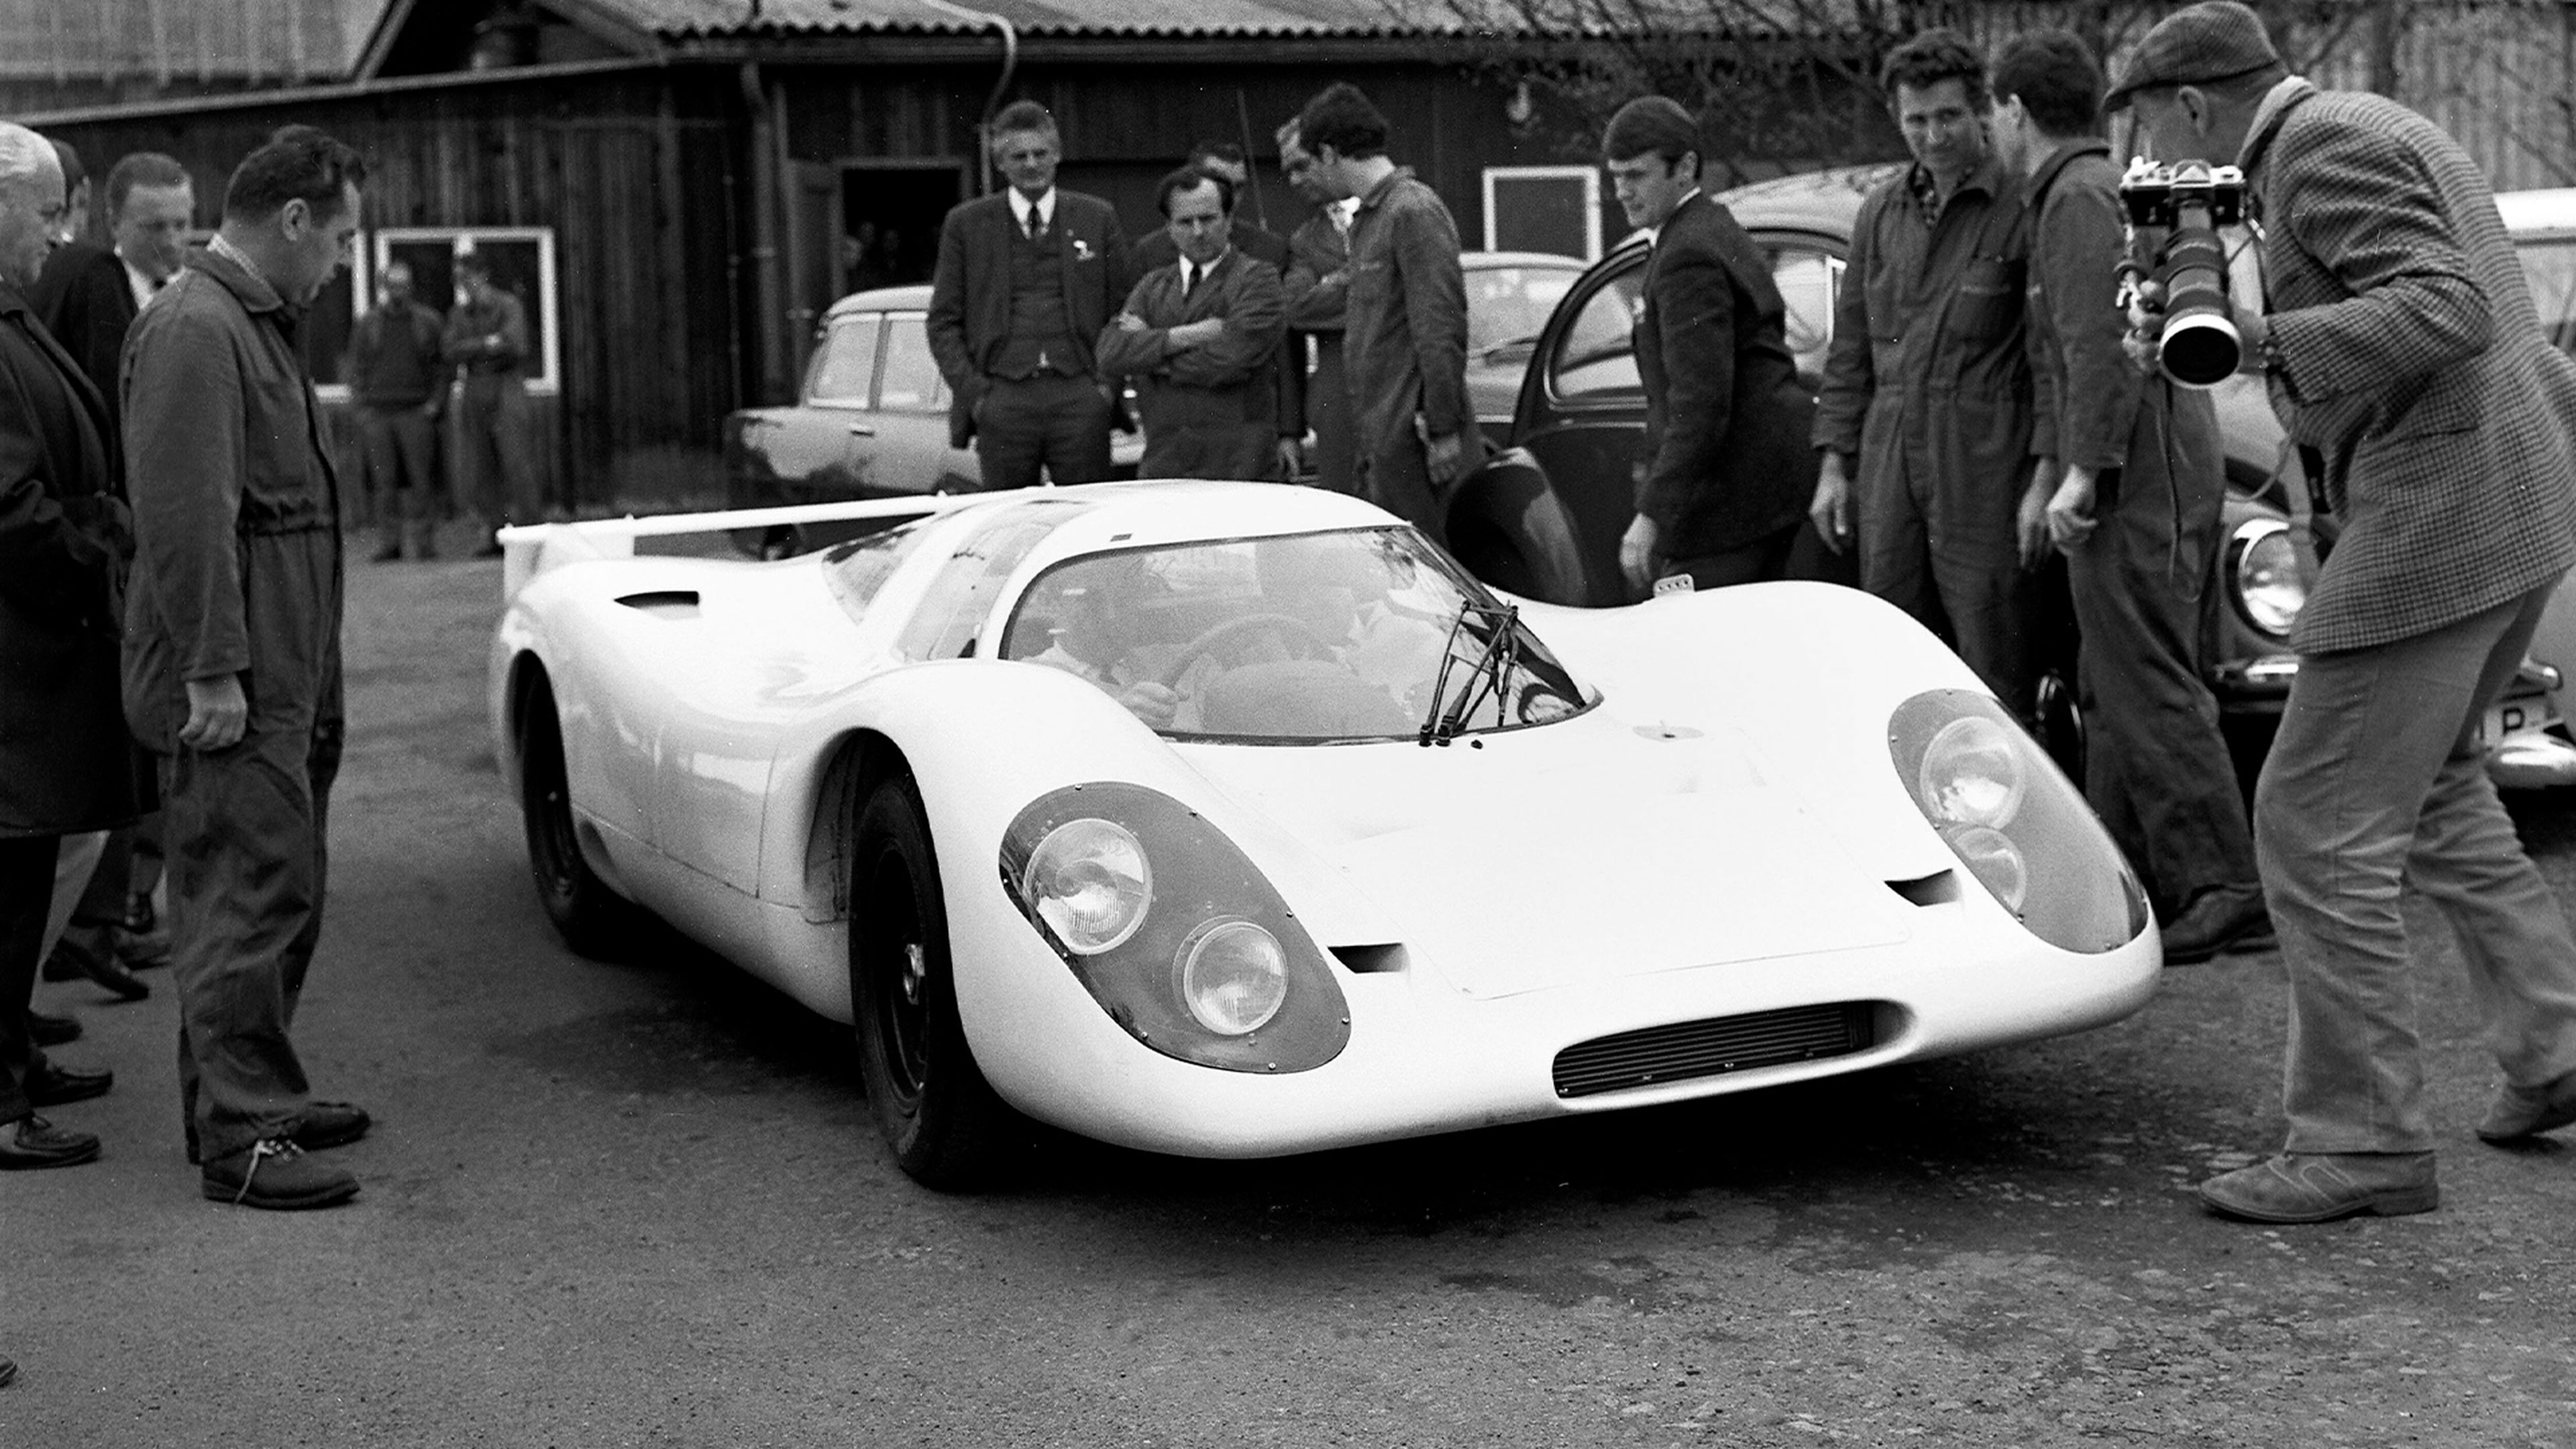 Una de las primeras apariciones del Porsche 917, frente a miembros de la empresa.